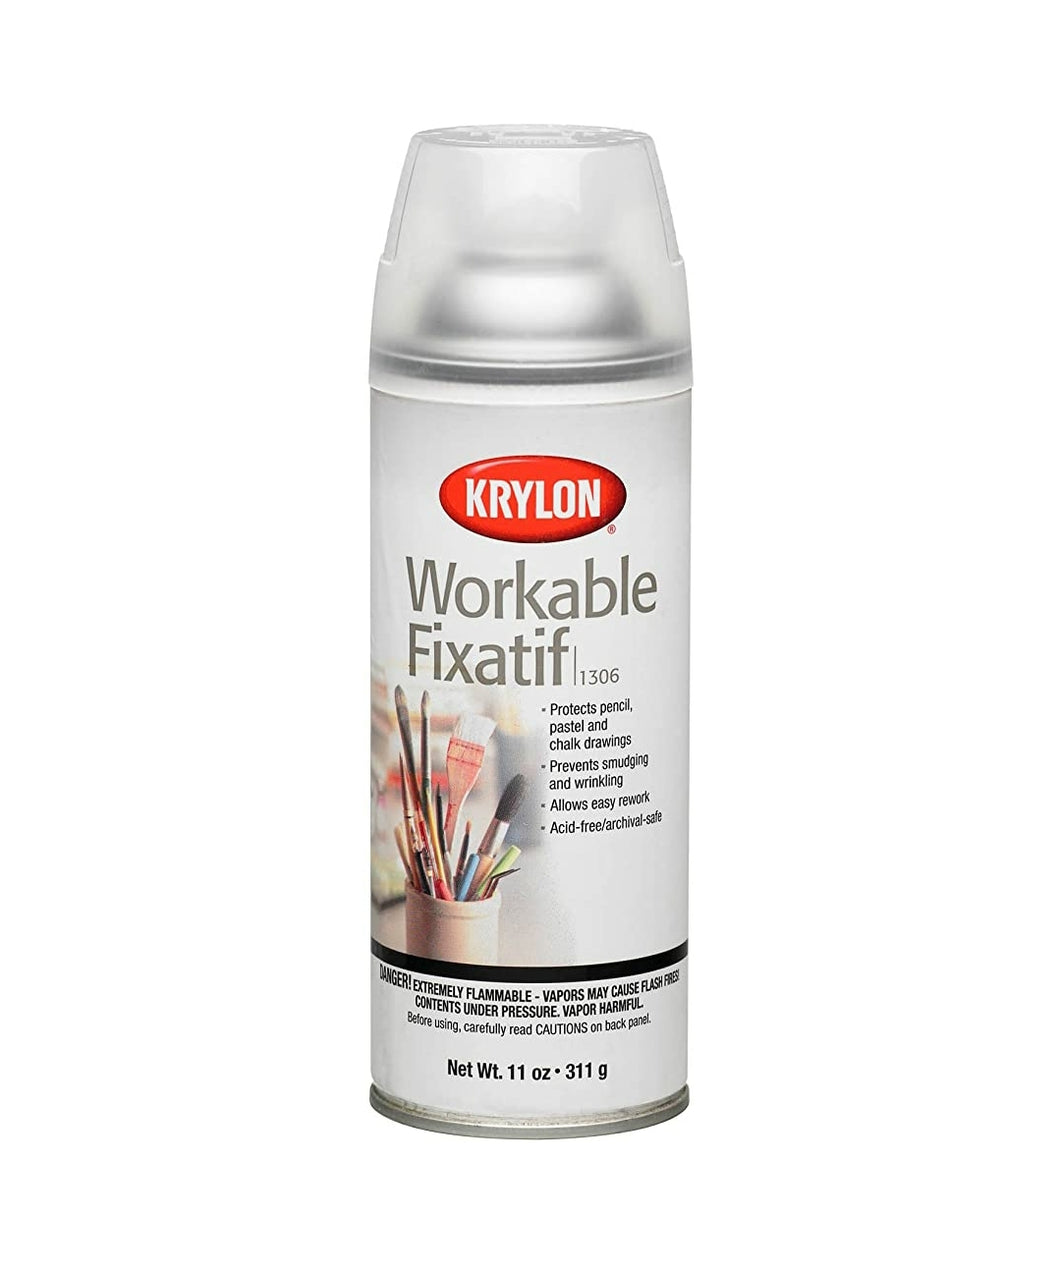 Krylon Workable Fixatif 1306